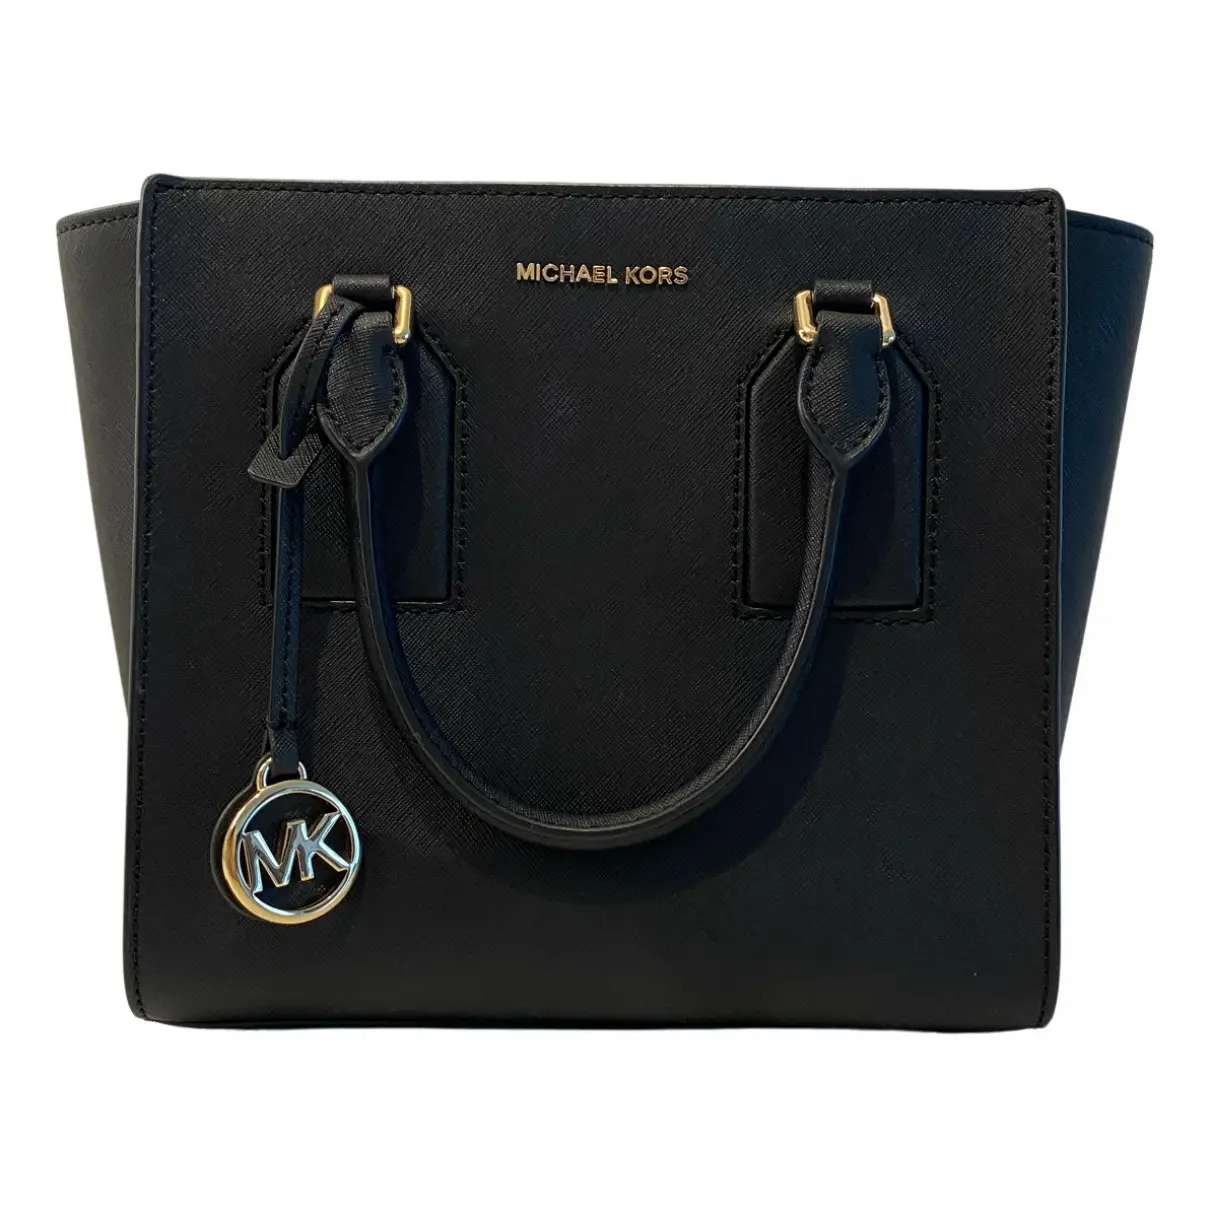 Selby leather handbag Michael Kors